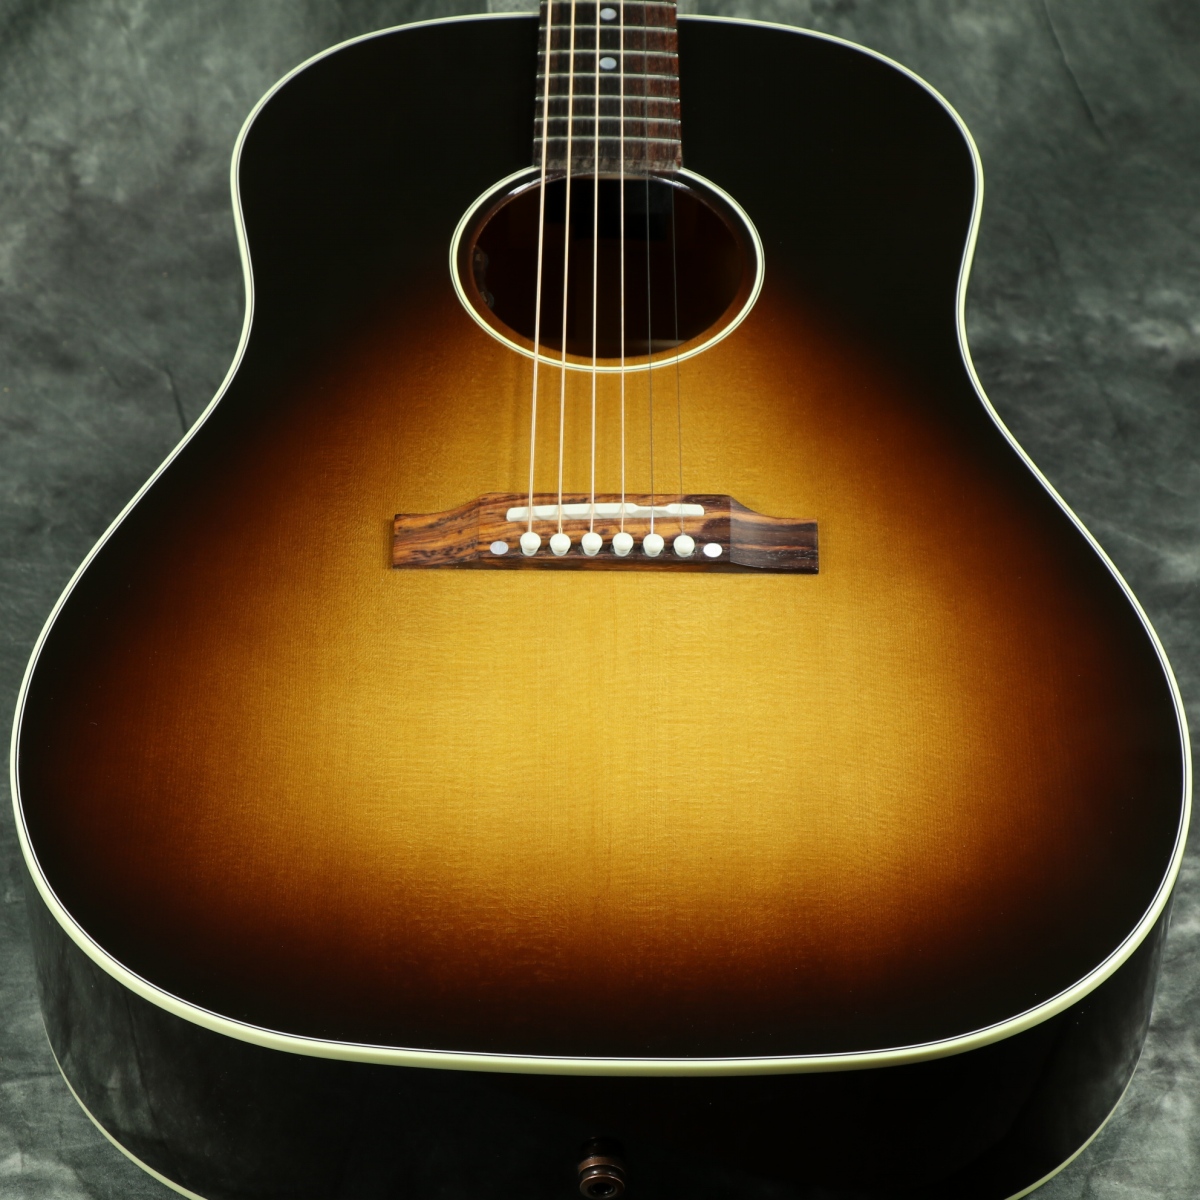 Gibson / Slash J-45 November Burst 【スラッシュシグネイチャー】 ギブソン アコースティックギター フォークギター  アコギ [SN 22391032]